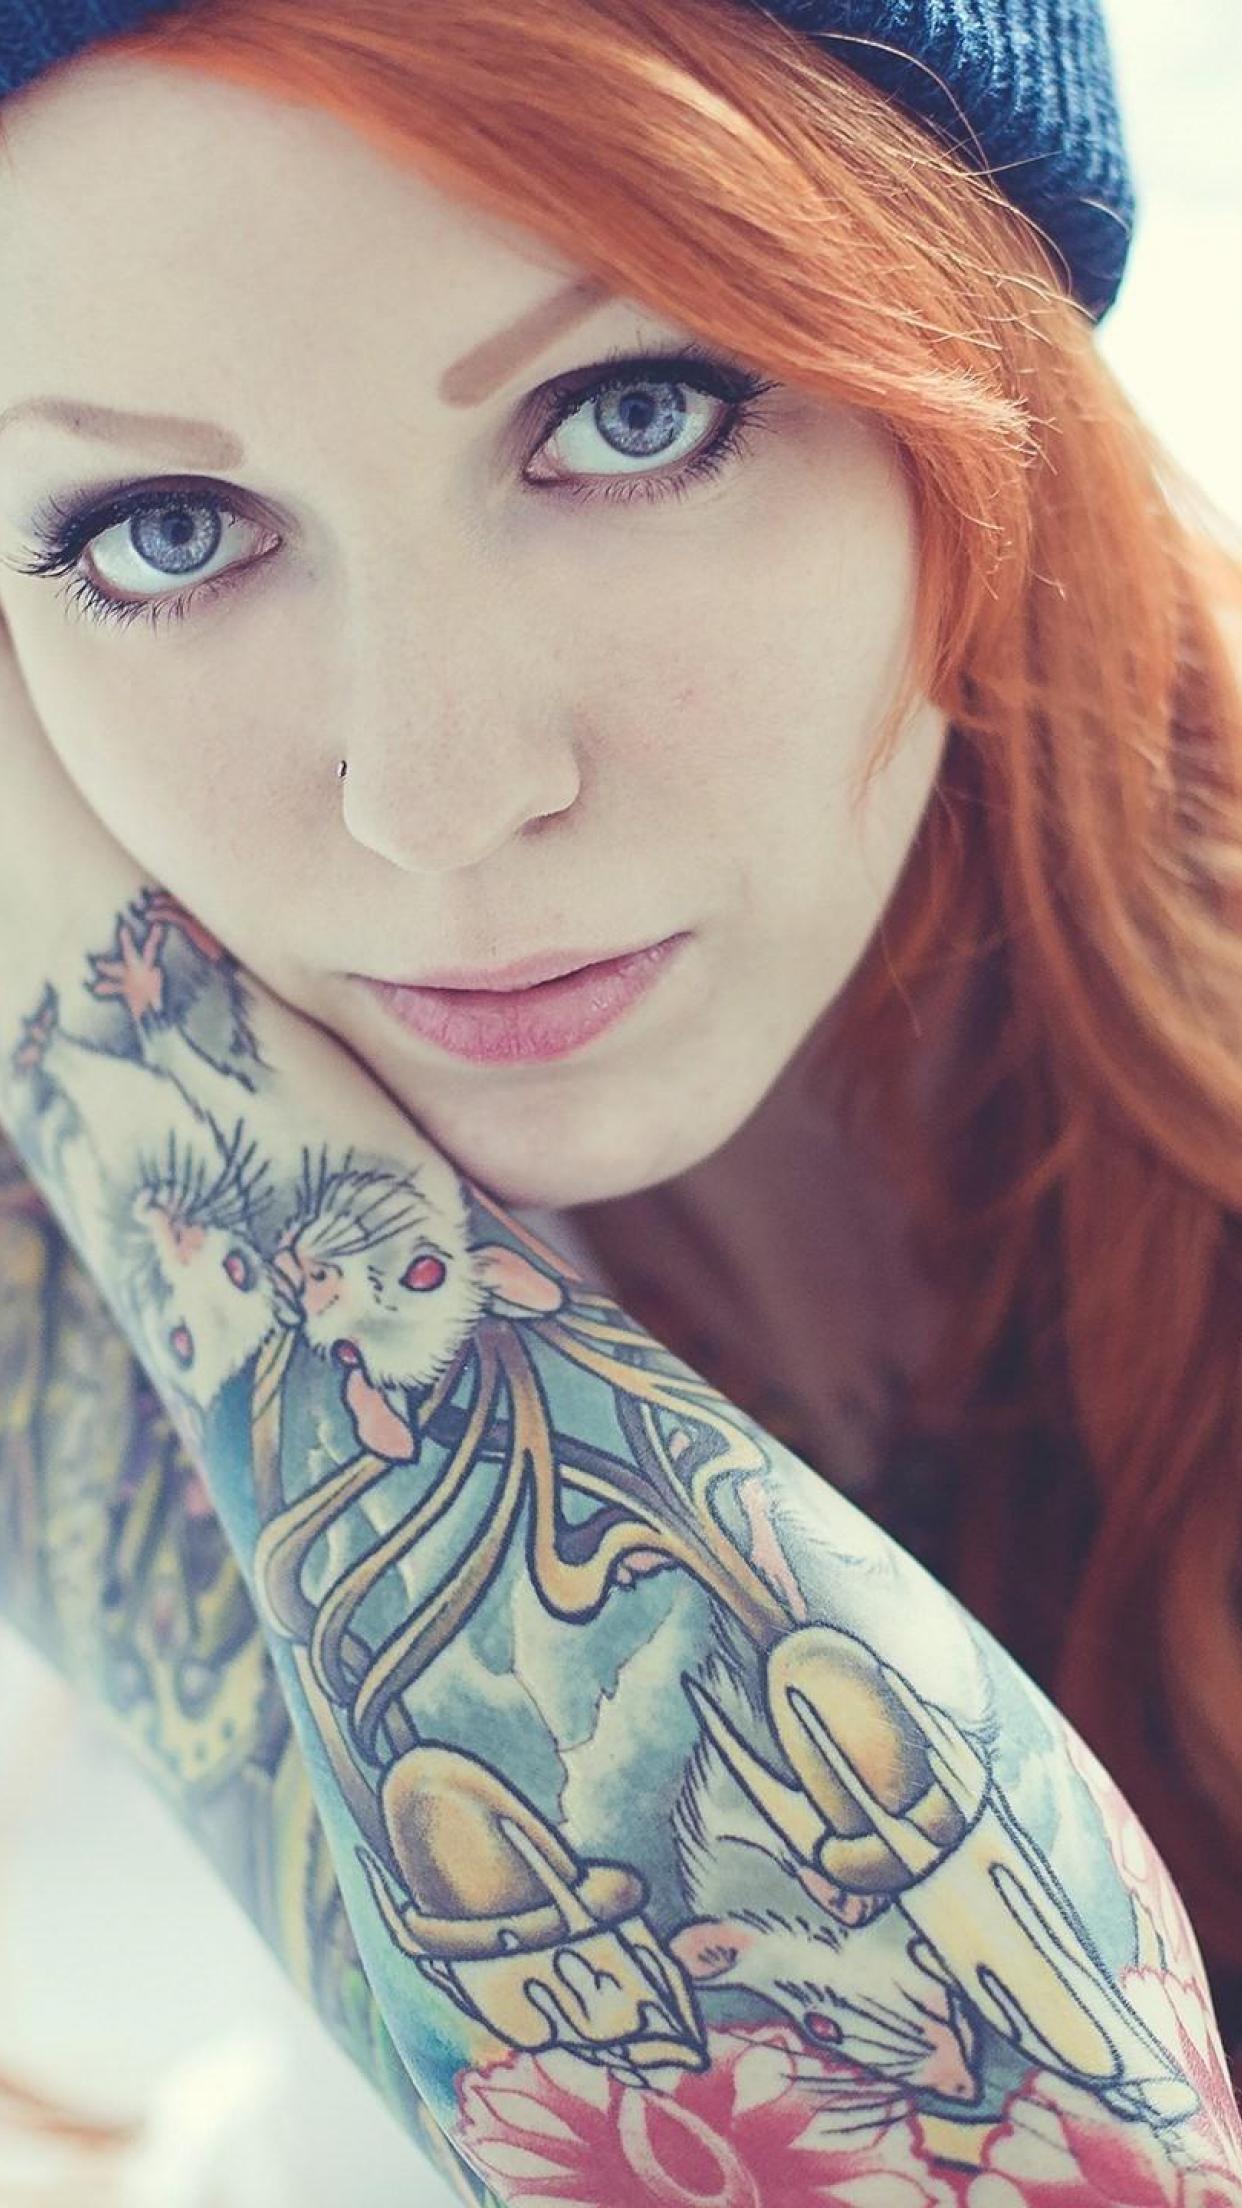 Girls Woman Tattoo Tattooed redhead HD Wallpapers, Desktop ...